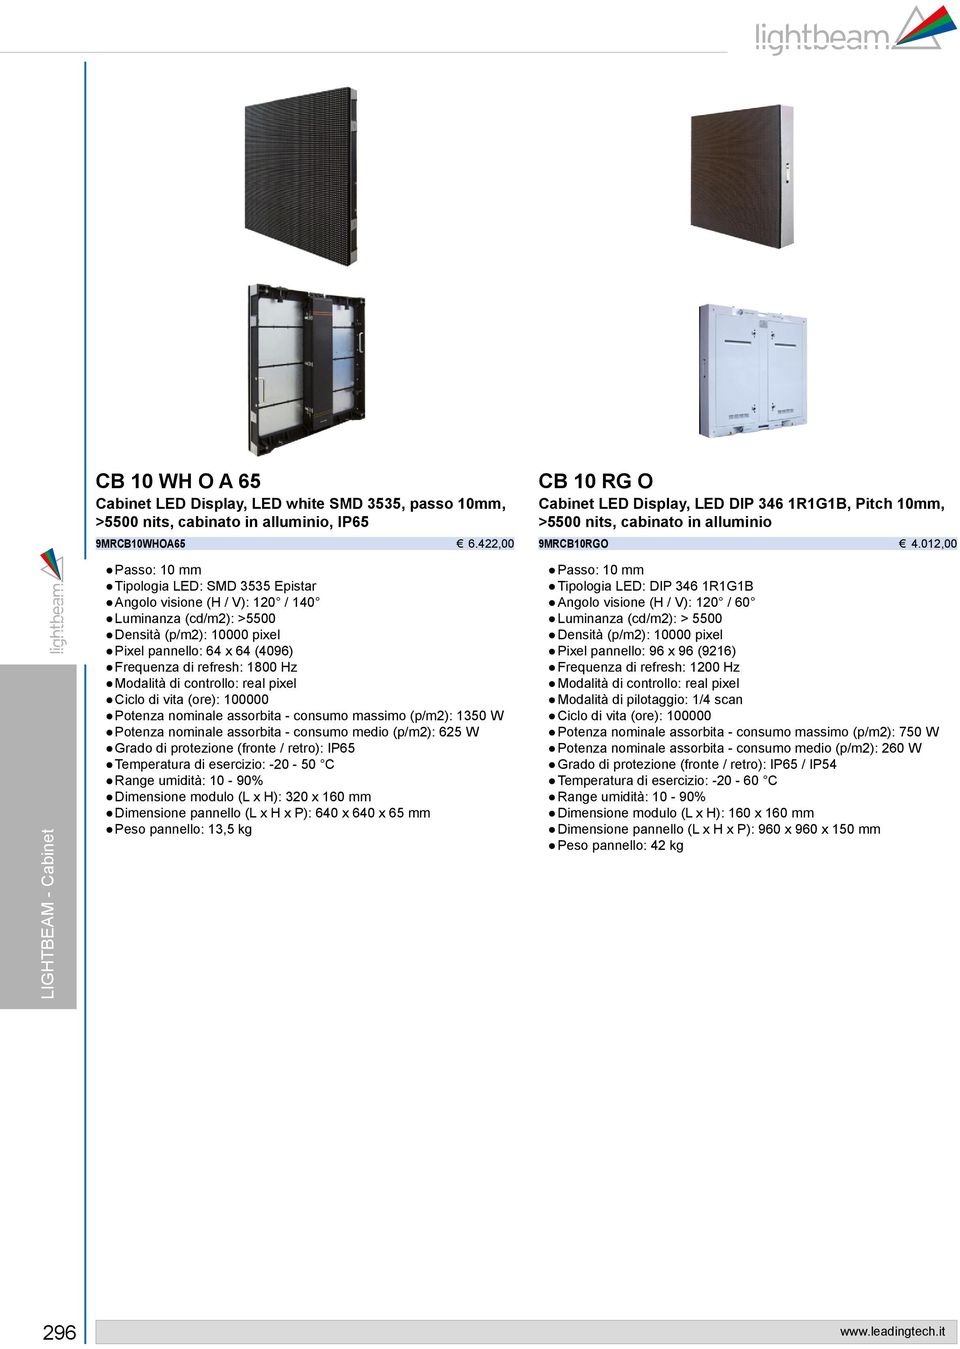 012,00 LIGHTBEAM - Cabinet Passo: 10 mm Tipologia LED: SMD 3535 Epistar Angolo visione (H / V): 120 / 140 Luminanza (cd/m2): >5500 Densità (p/m2): 10000 pixel Pixel pannello: 64 x 64 (4096) Frequenza